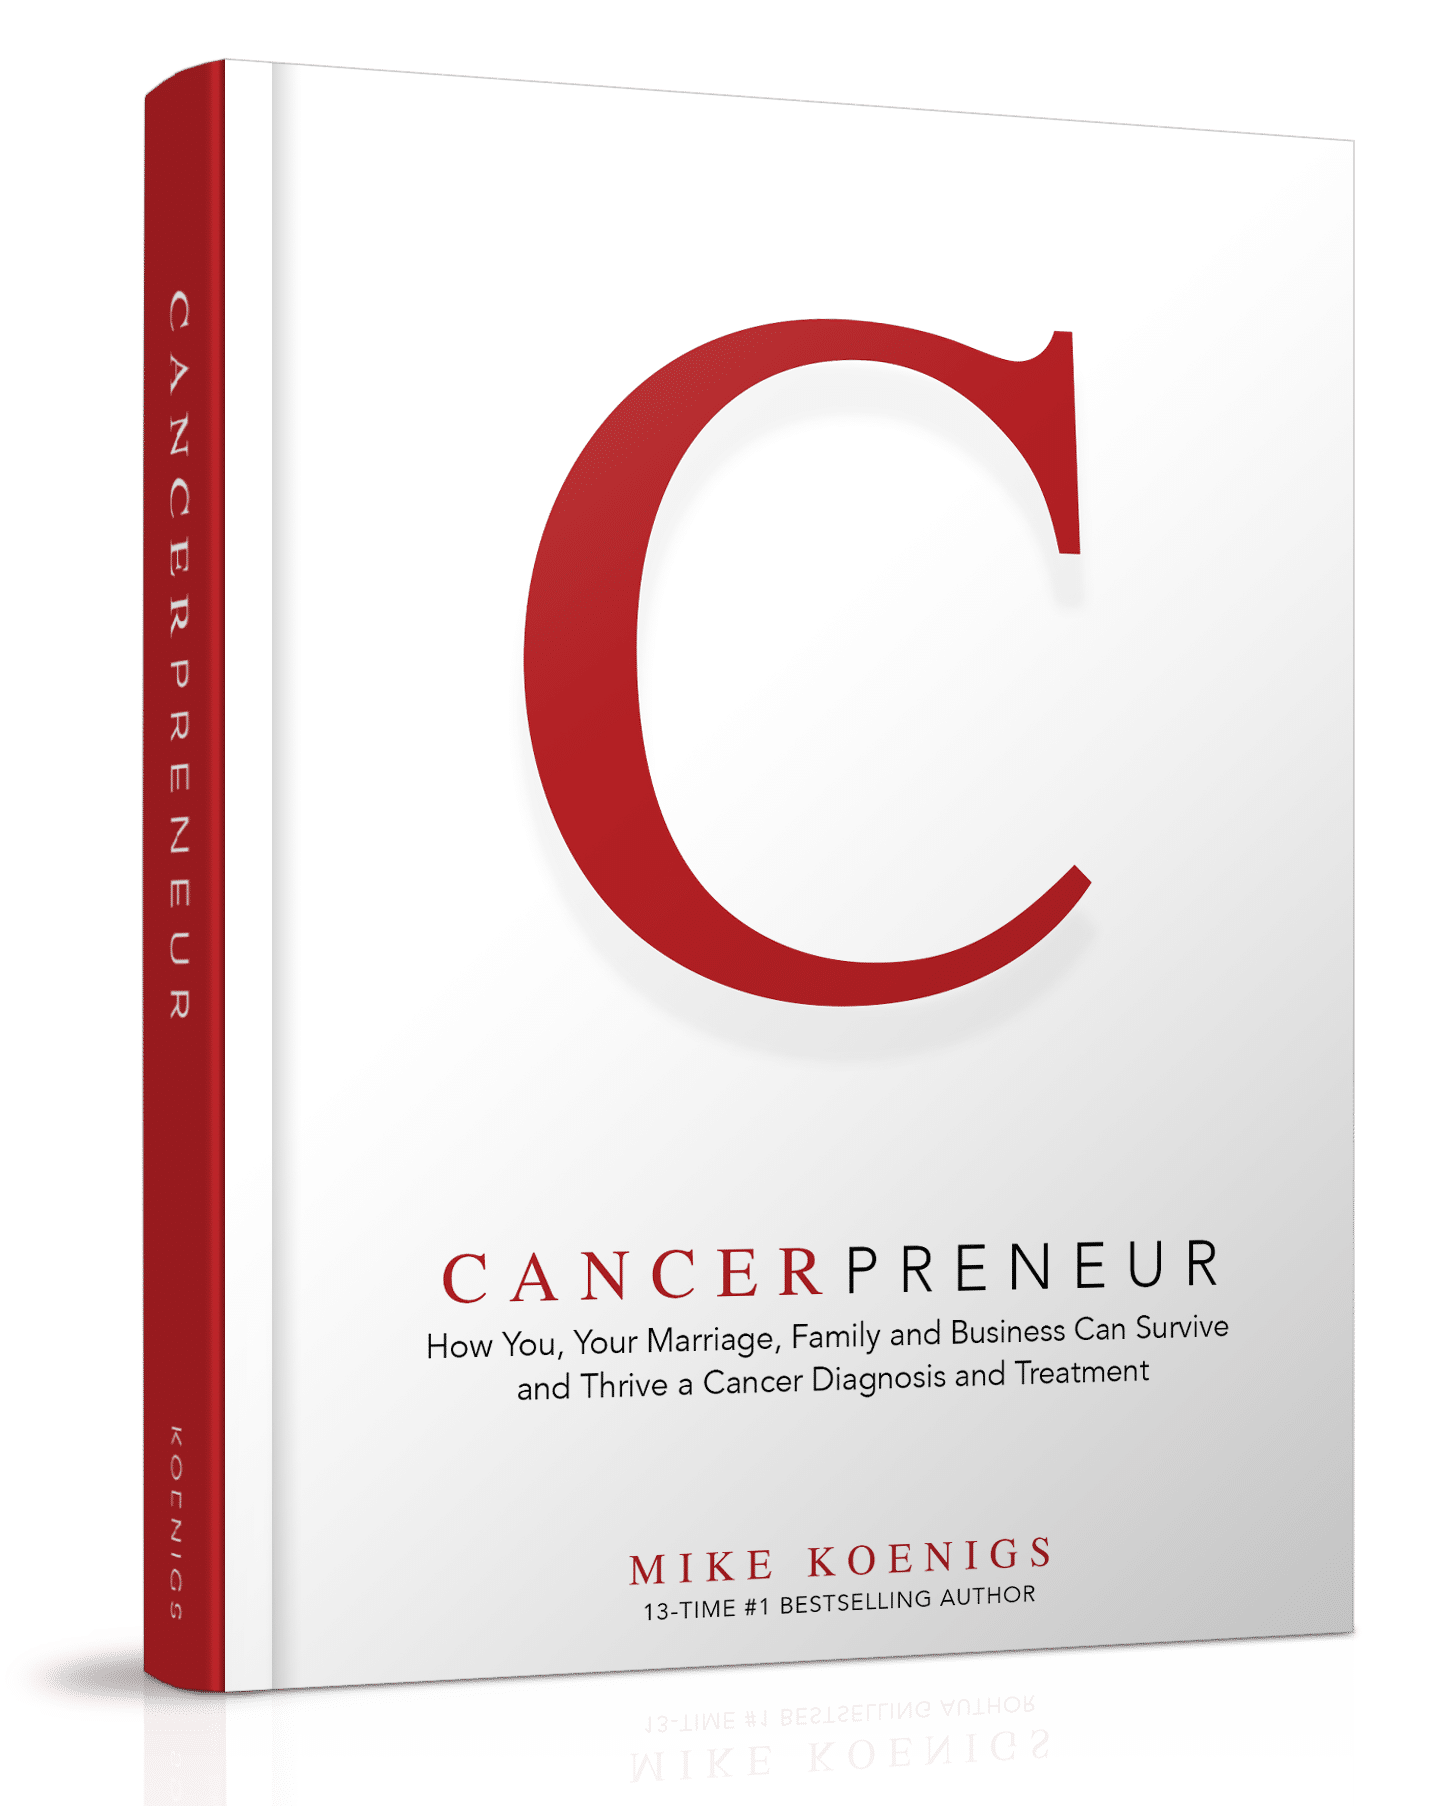 Cancerprenuer Book Cover